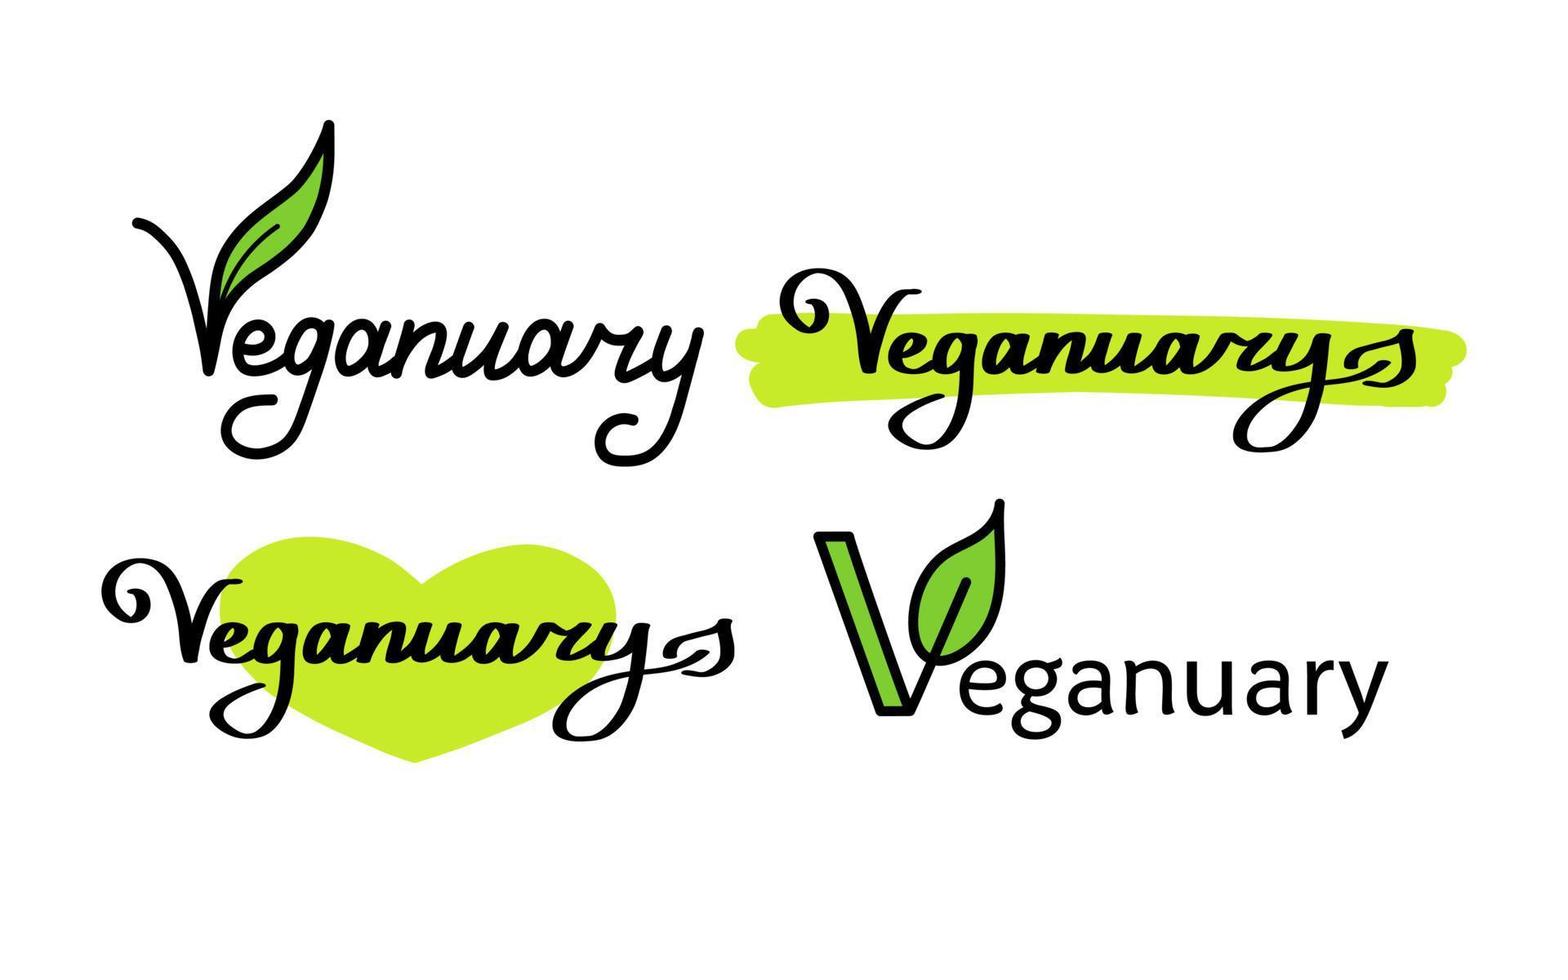 Vegan handdrawn text green vector lettering illustration.